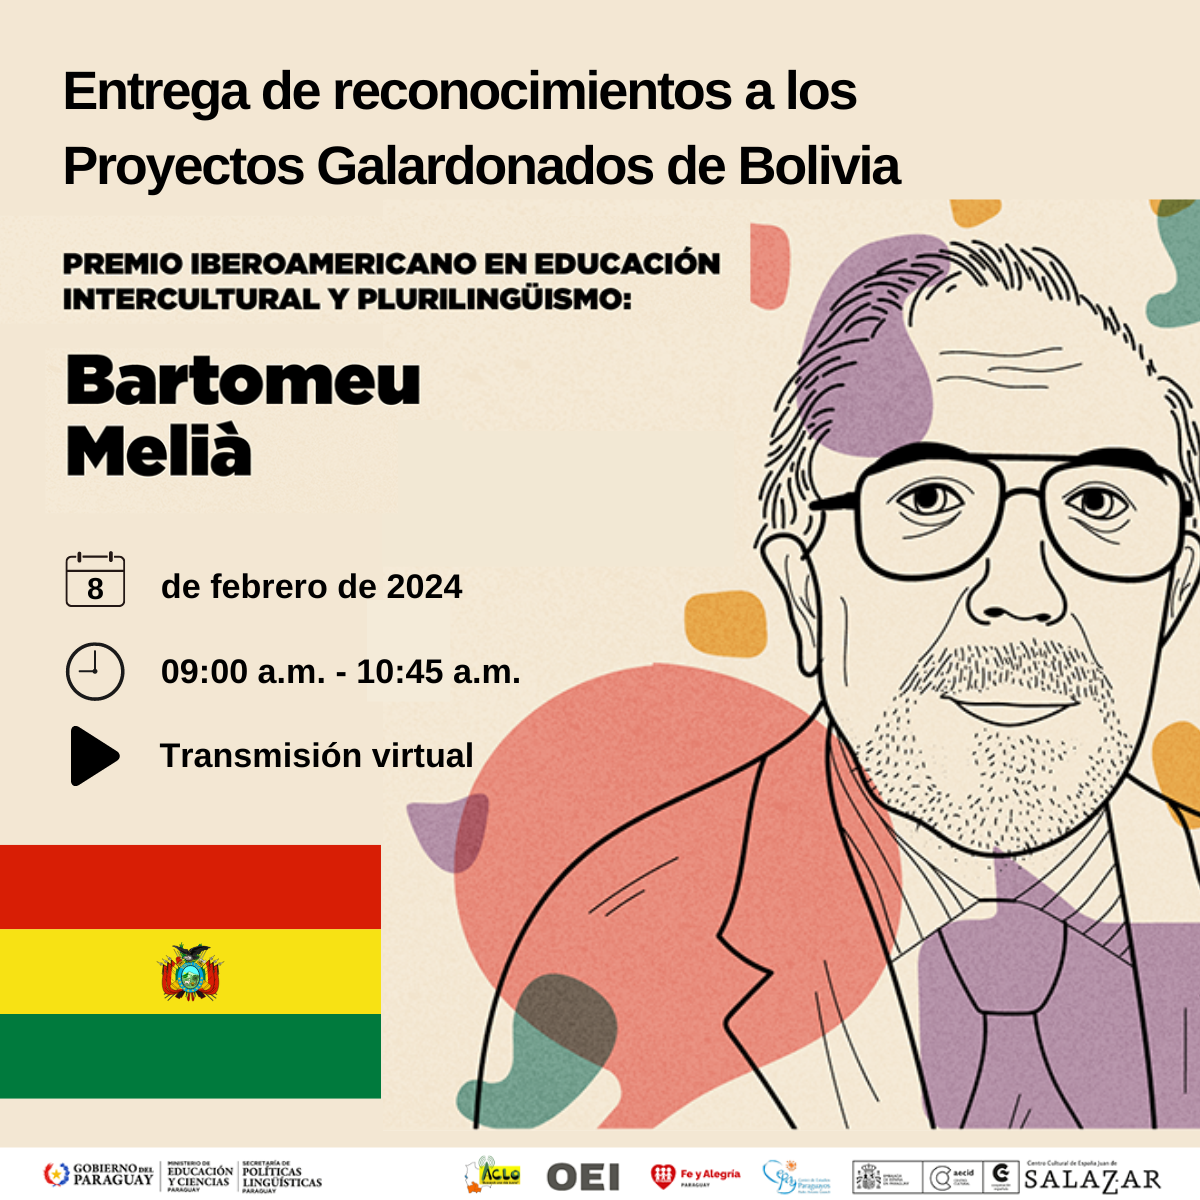 Reconocimiento a los proyectos galardonados del Premio Iberoamericano en Educación Intercultural y Plurilingüismo, en reconocimiento a "Bartomeu Melià" en Bolivia.